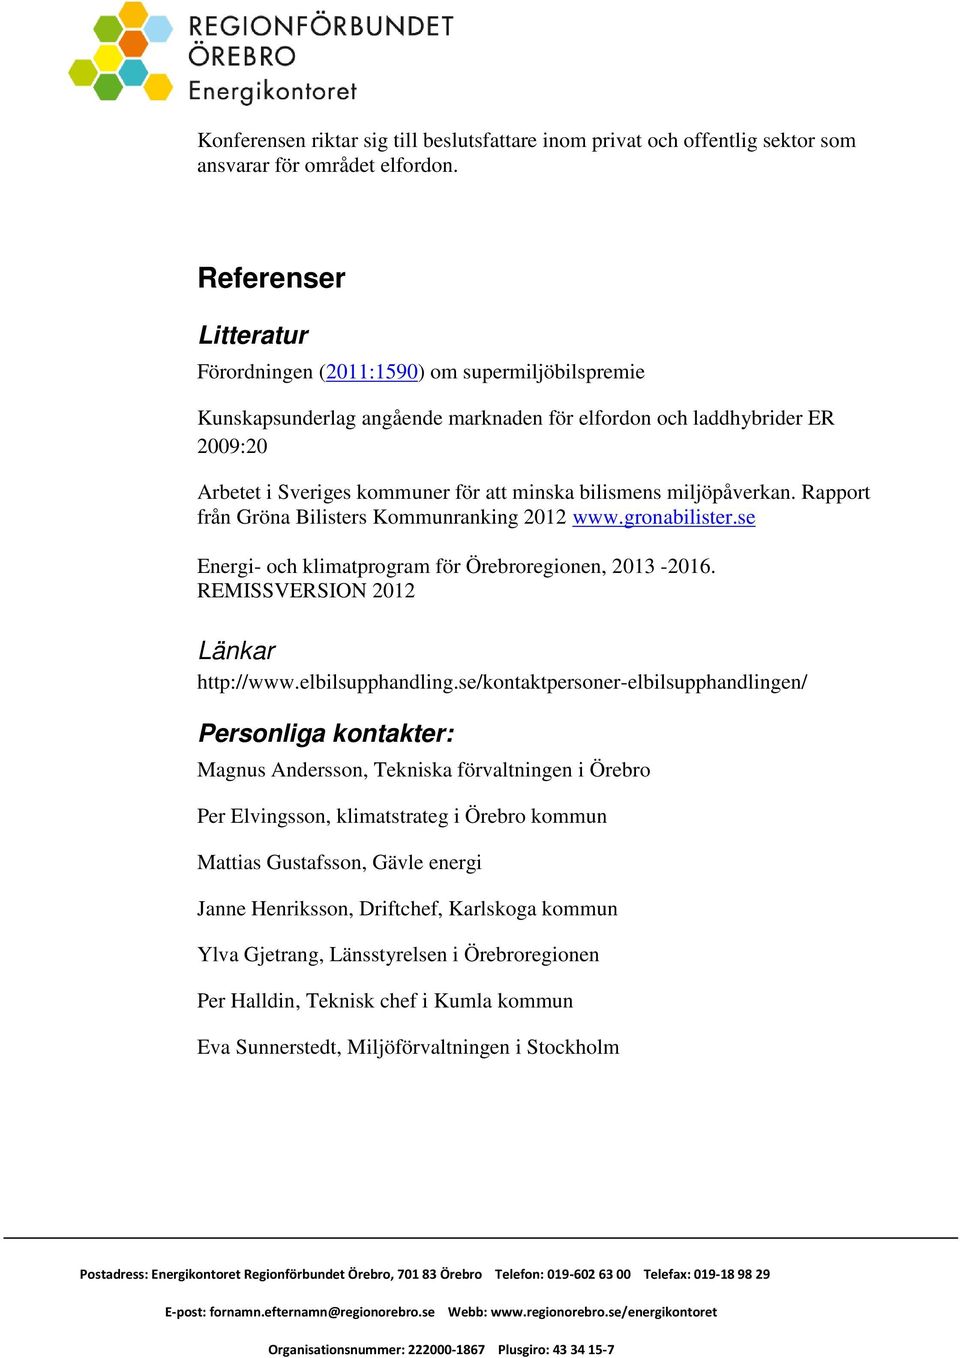 bilismens miljöpåverkan. Rapport från Gröna Bilisters Kommunranking 2012 www.gronabilister.se Energi- och klimatprogram för Örebroregionen, 2013-2016. REMISSVERSION 2012 Länkar http://www.